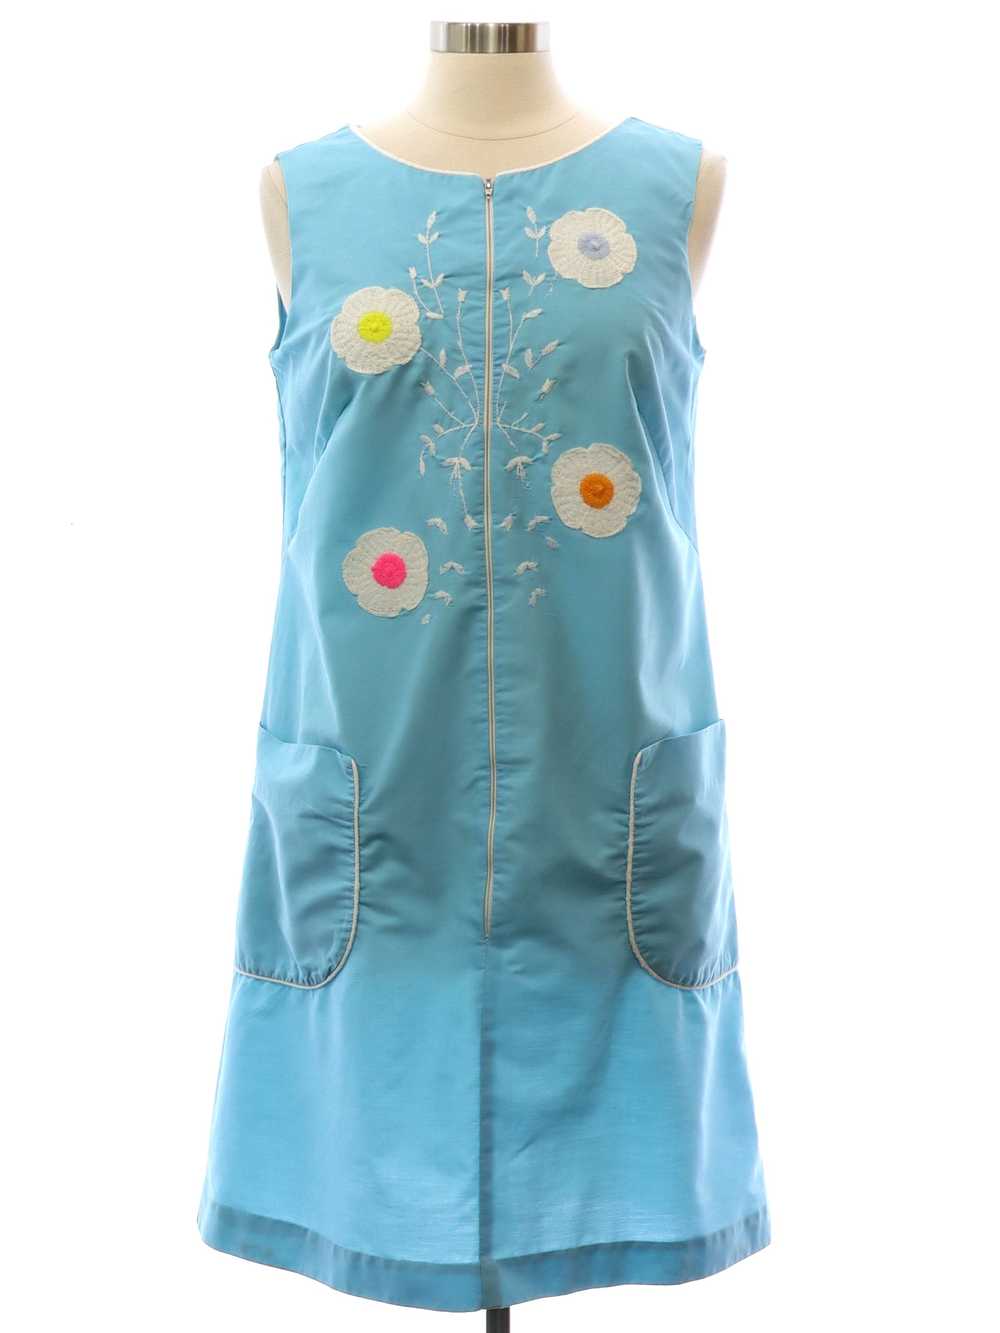 1960's Mod Dress - image 1